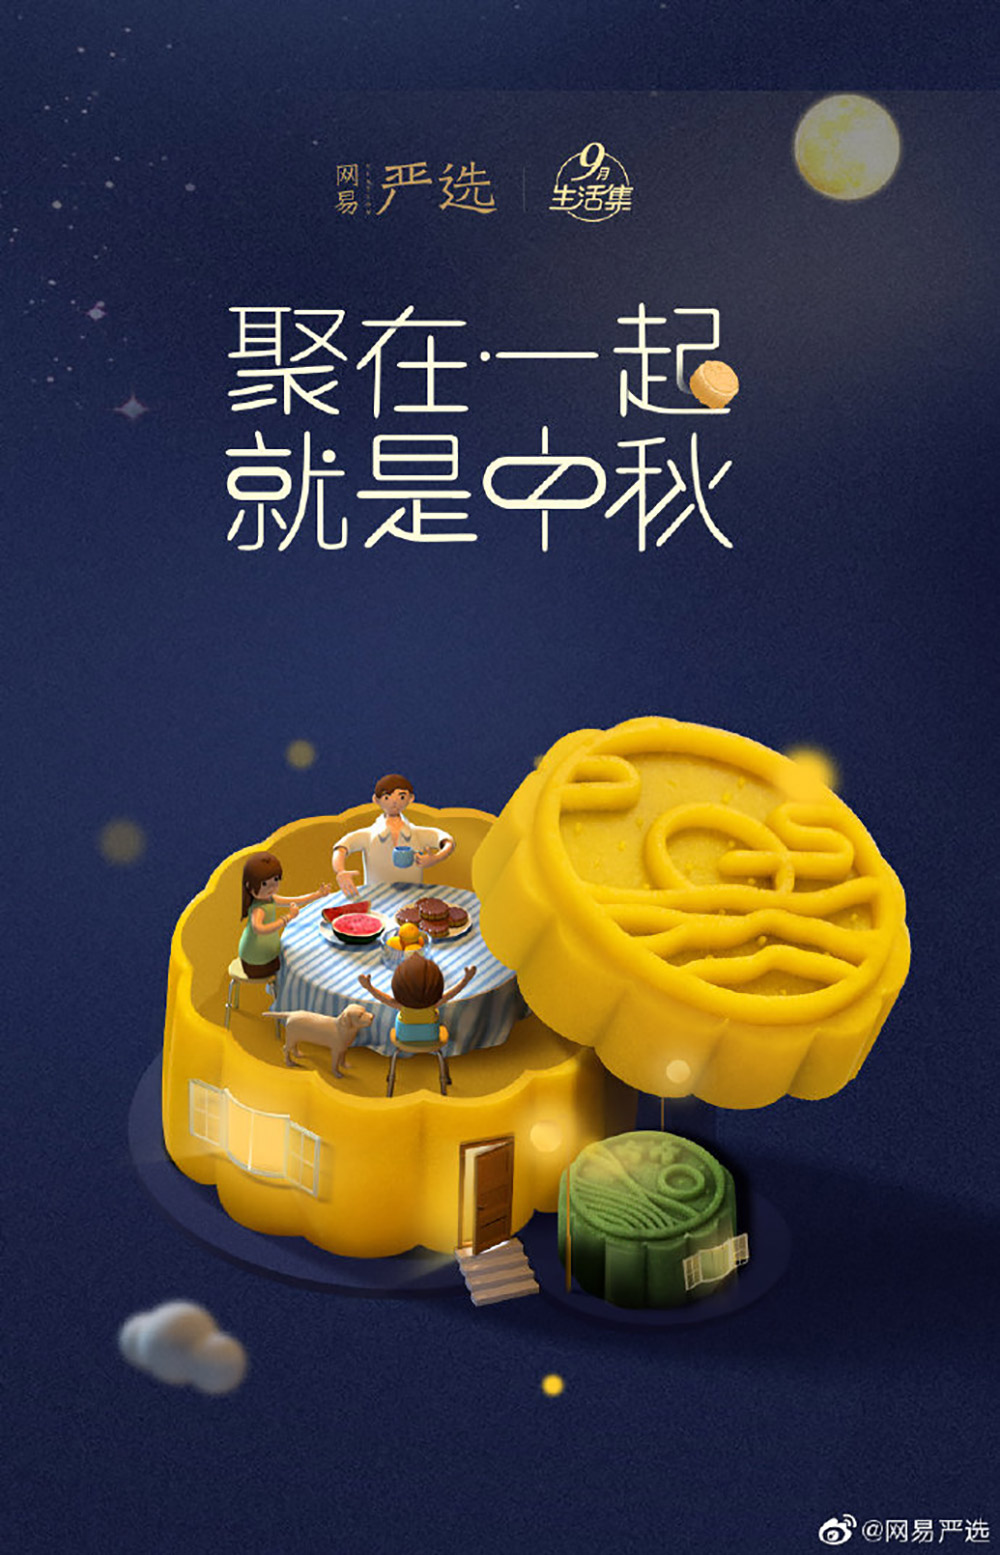 中秋节海报中如何使用月饼和月亮？